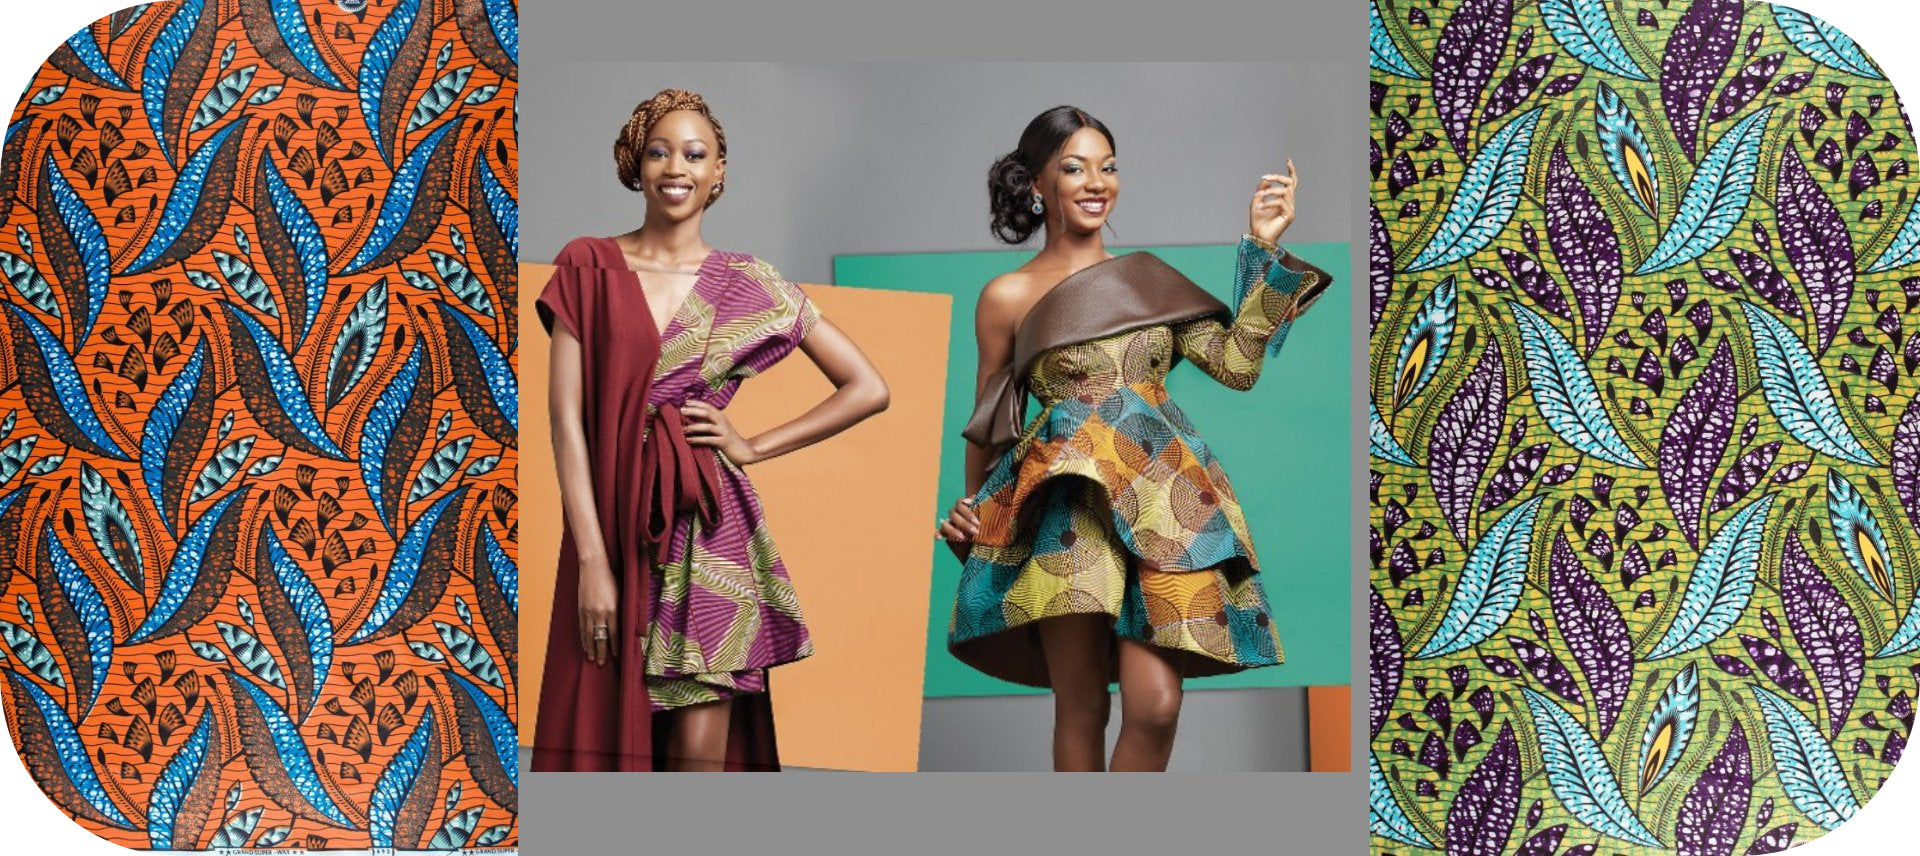 African wax fabric pattern - African women's dress